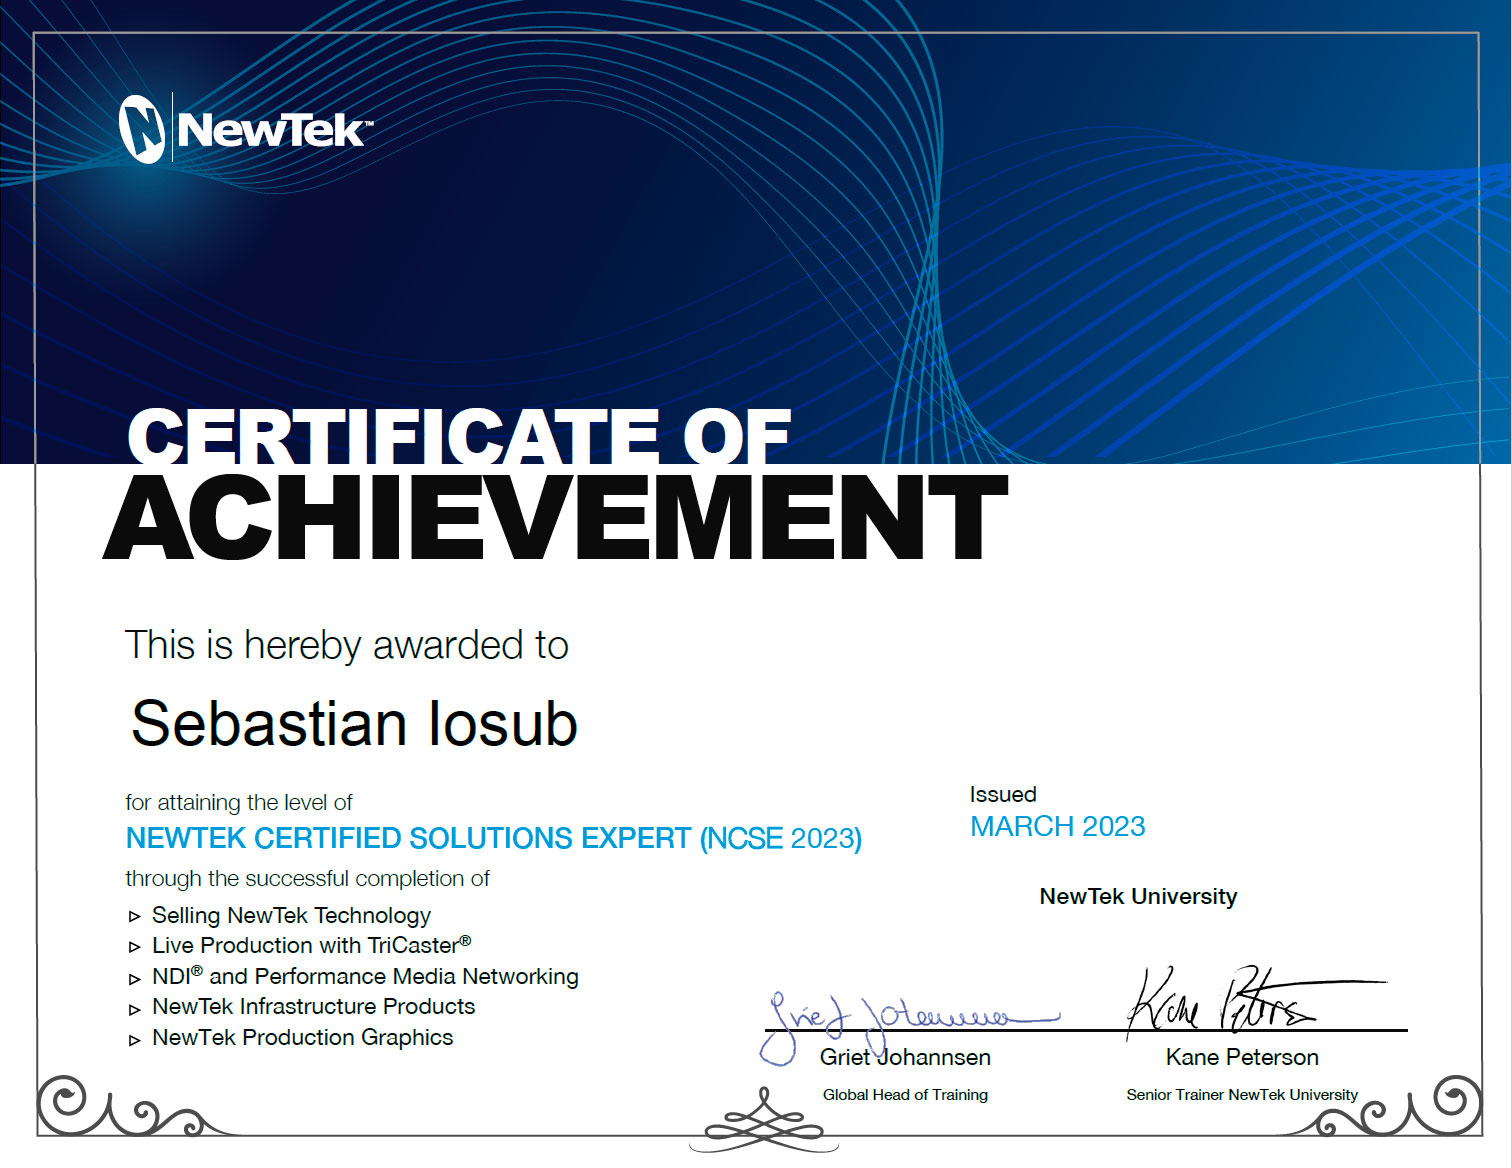 NewTek Certified Solutions Expert